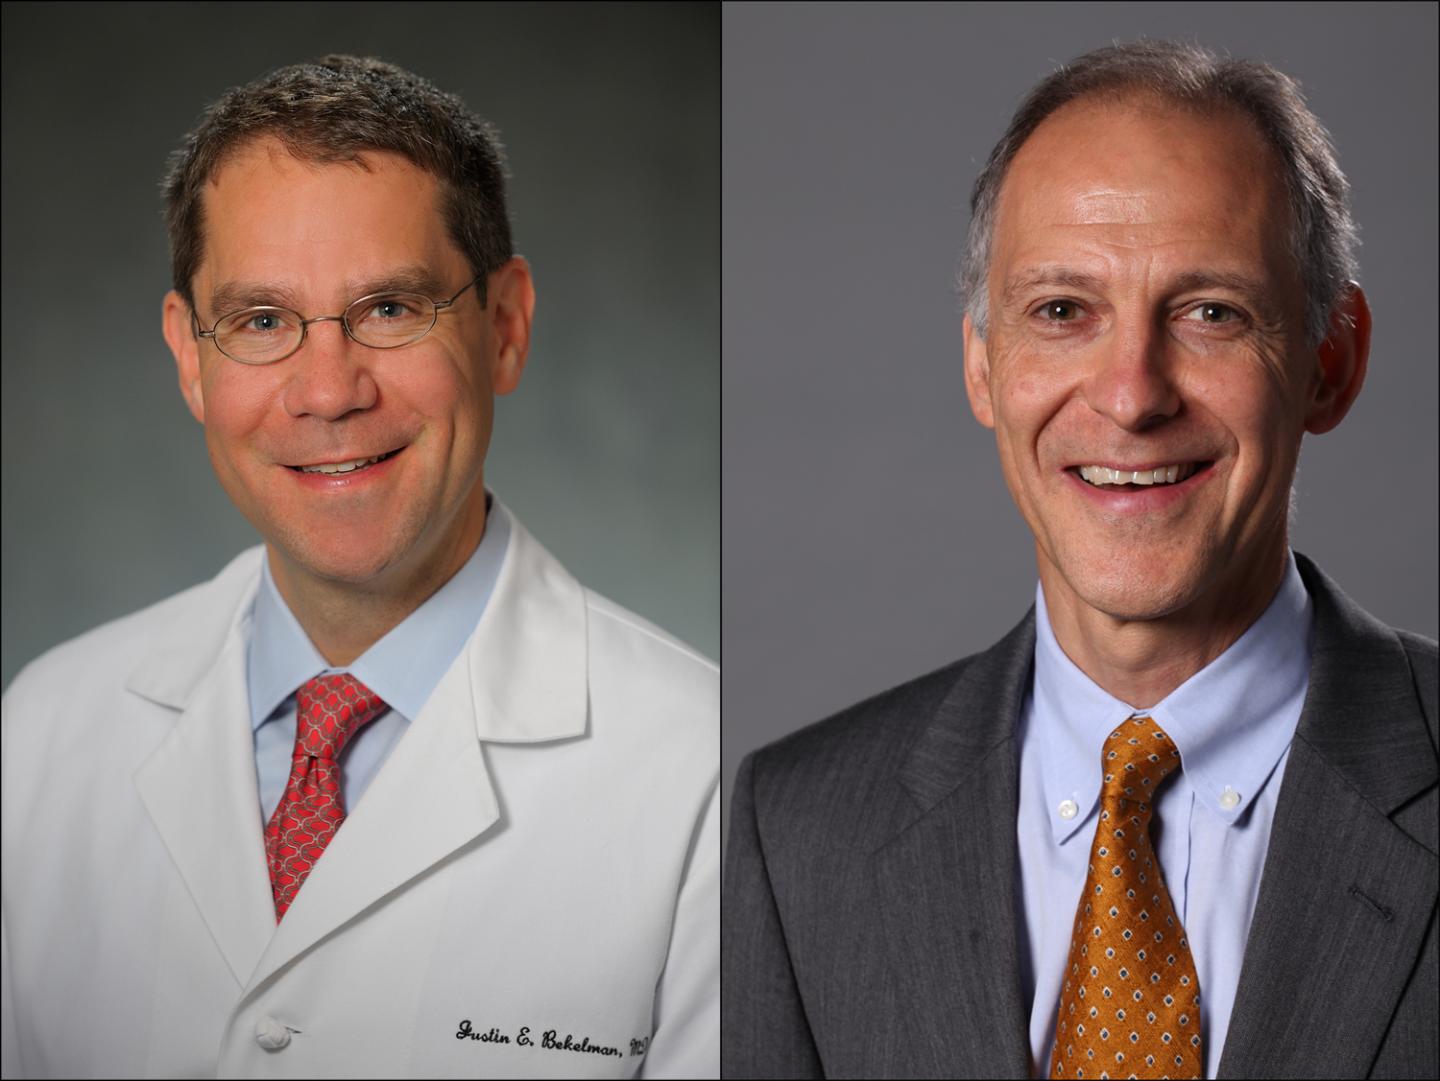 Justin E. Bekelman and Ezekiel J. Emanuel, Penn Medicine